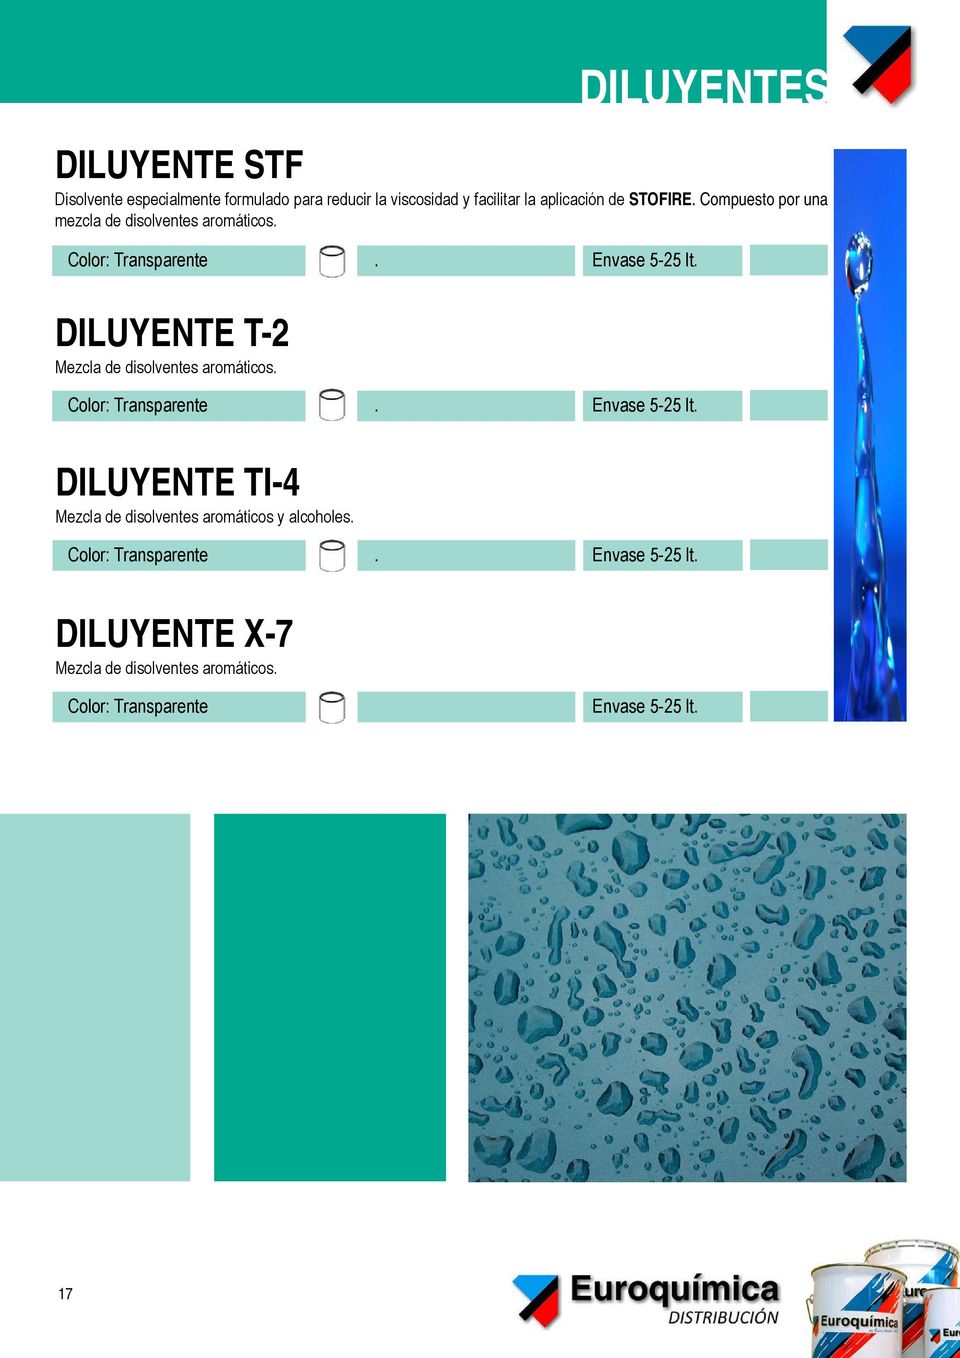 DILUYENTES DILUYENTE T-2 Mezcla de disolventes aromáticos. Color: Transparente. Envase 5-25 lt.